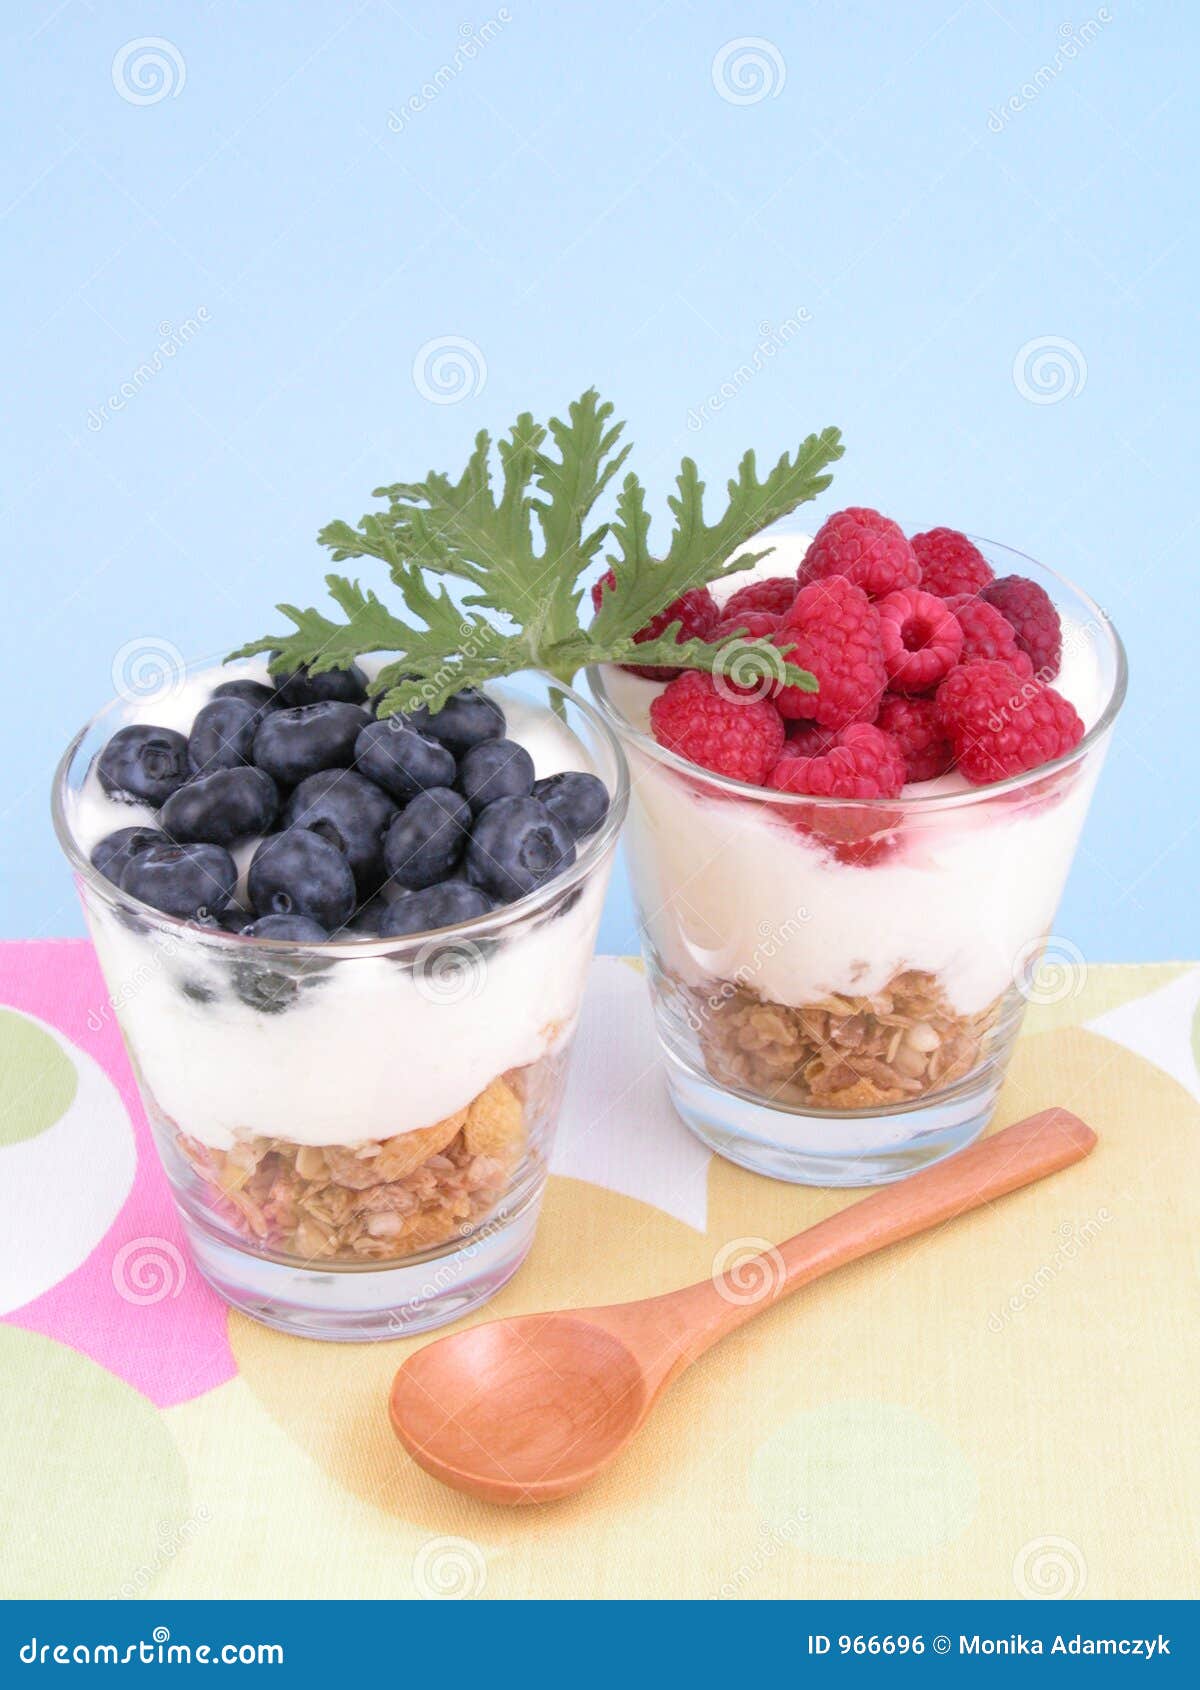 Light breakfast stock photo. Image of raspberries, light - 966696